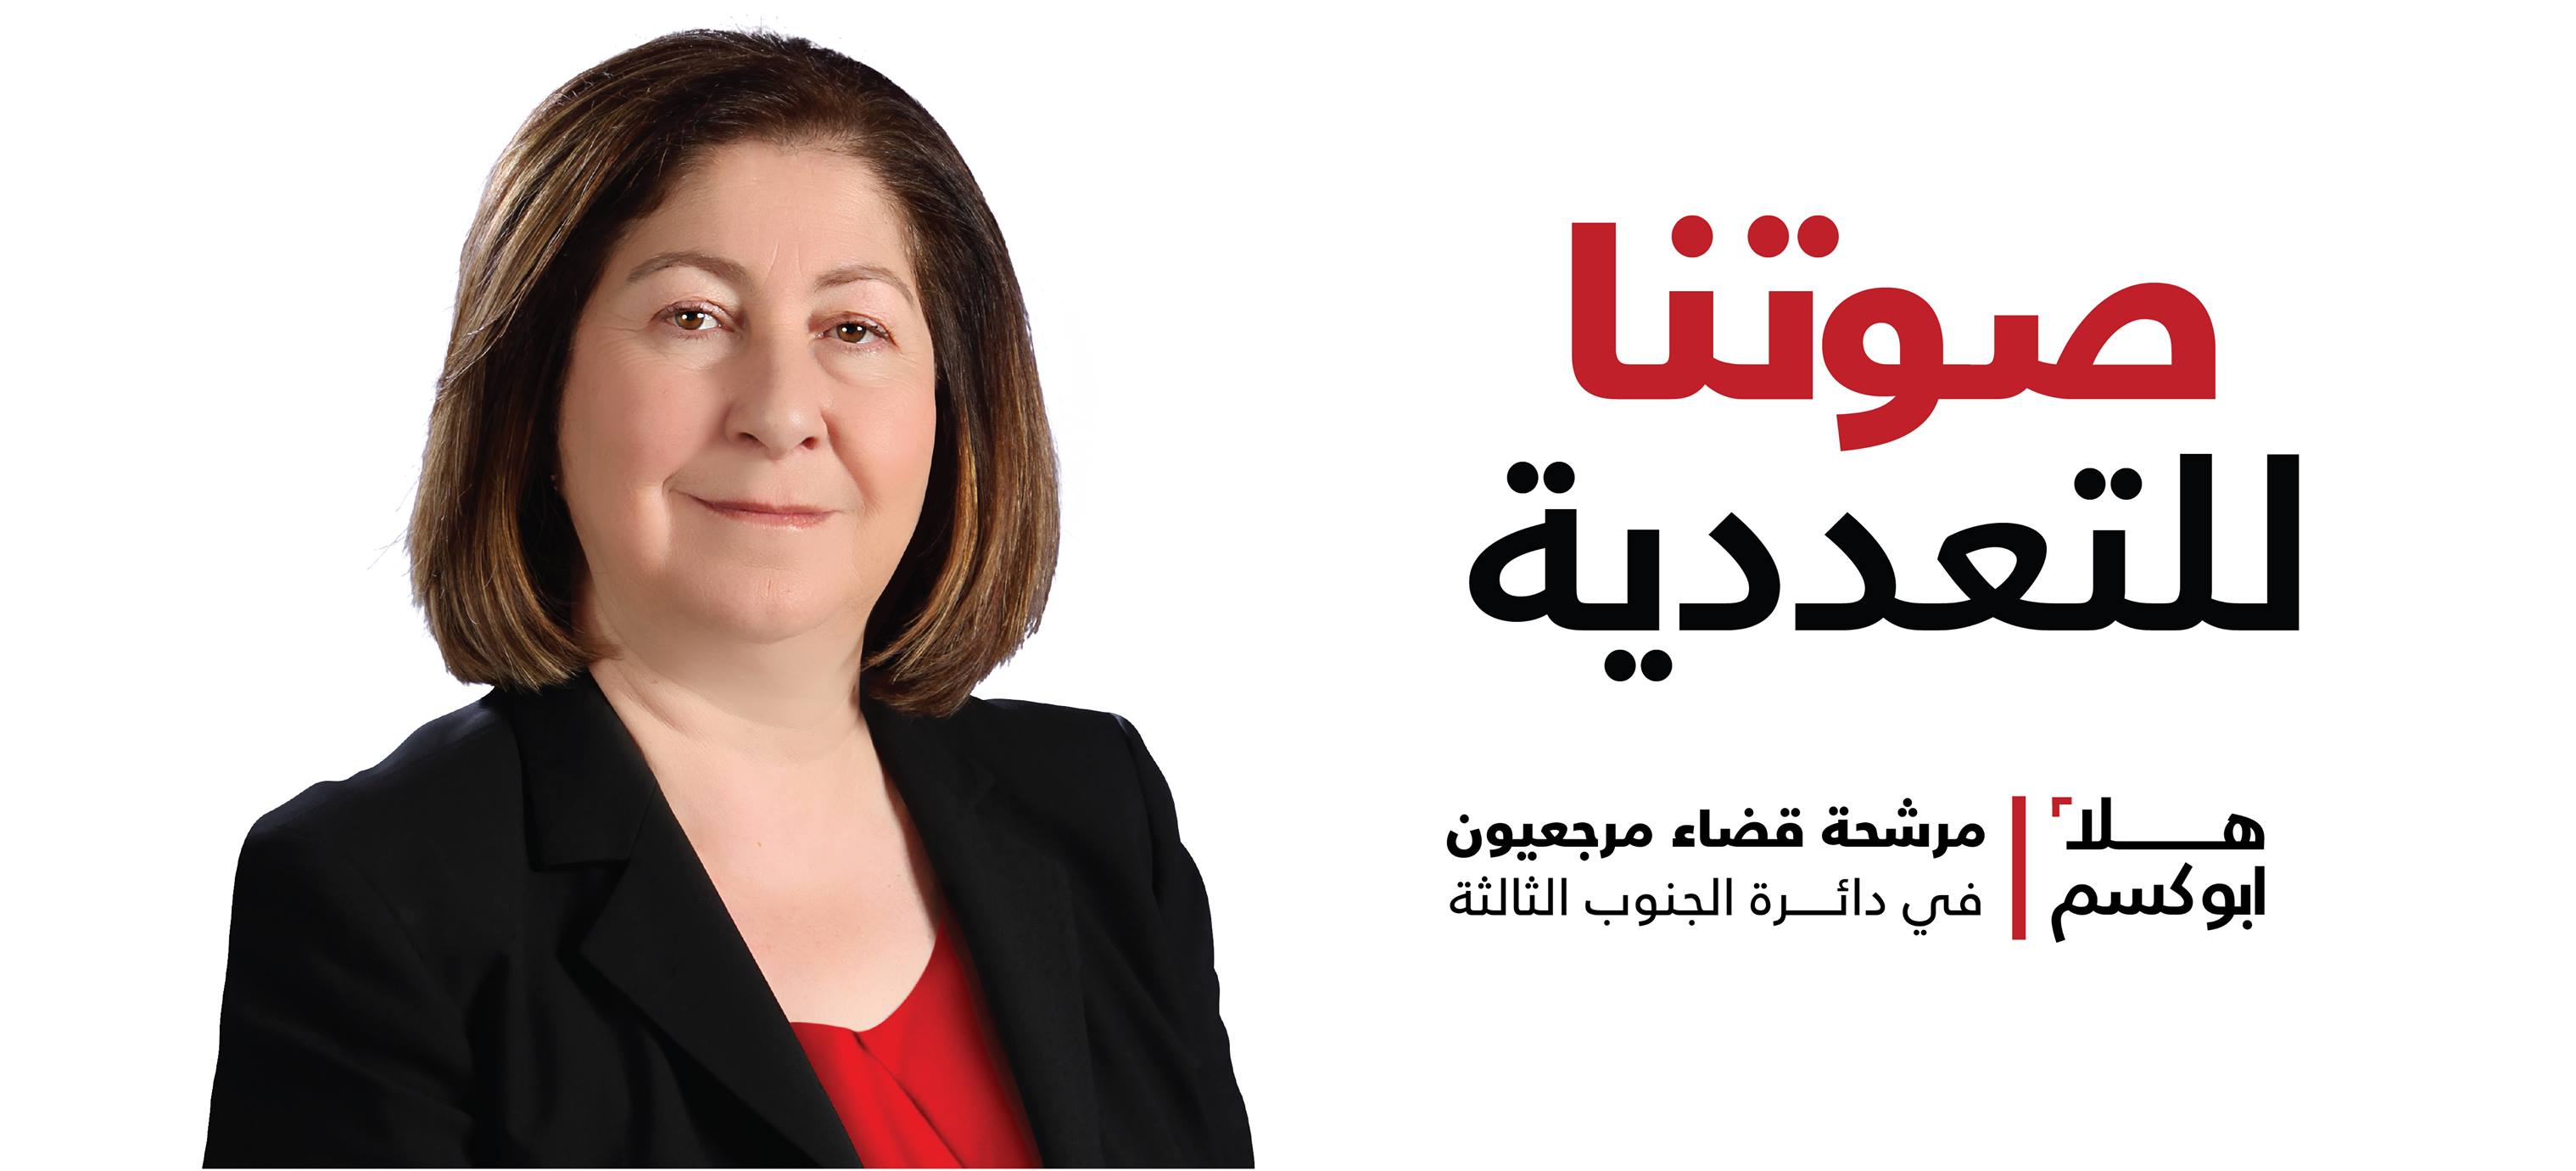 الدكتورة هلا  أبو كسم  مرشحة قضاء مرجعيون - حاصبيا دائرة الجنوب الثالثة، ضمن لائحة صوت واحد للتغيير